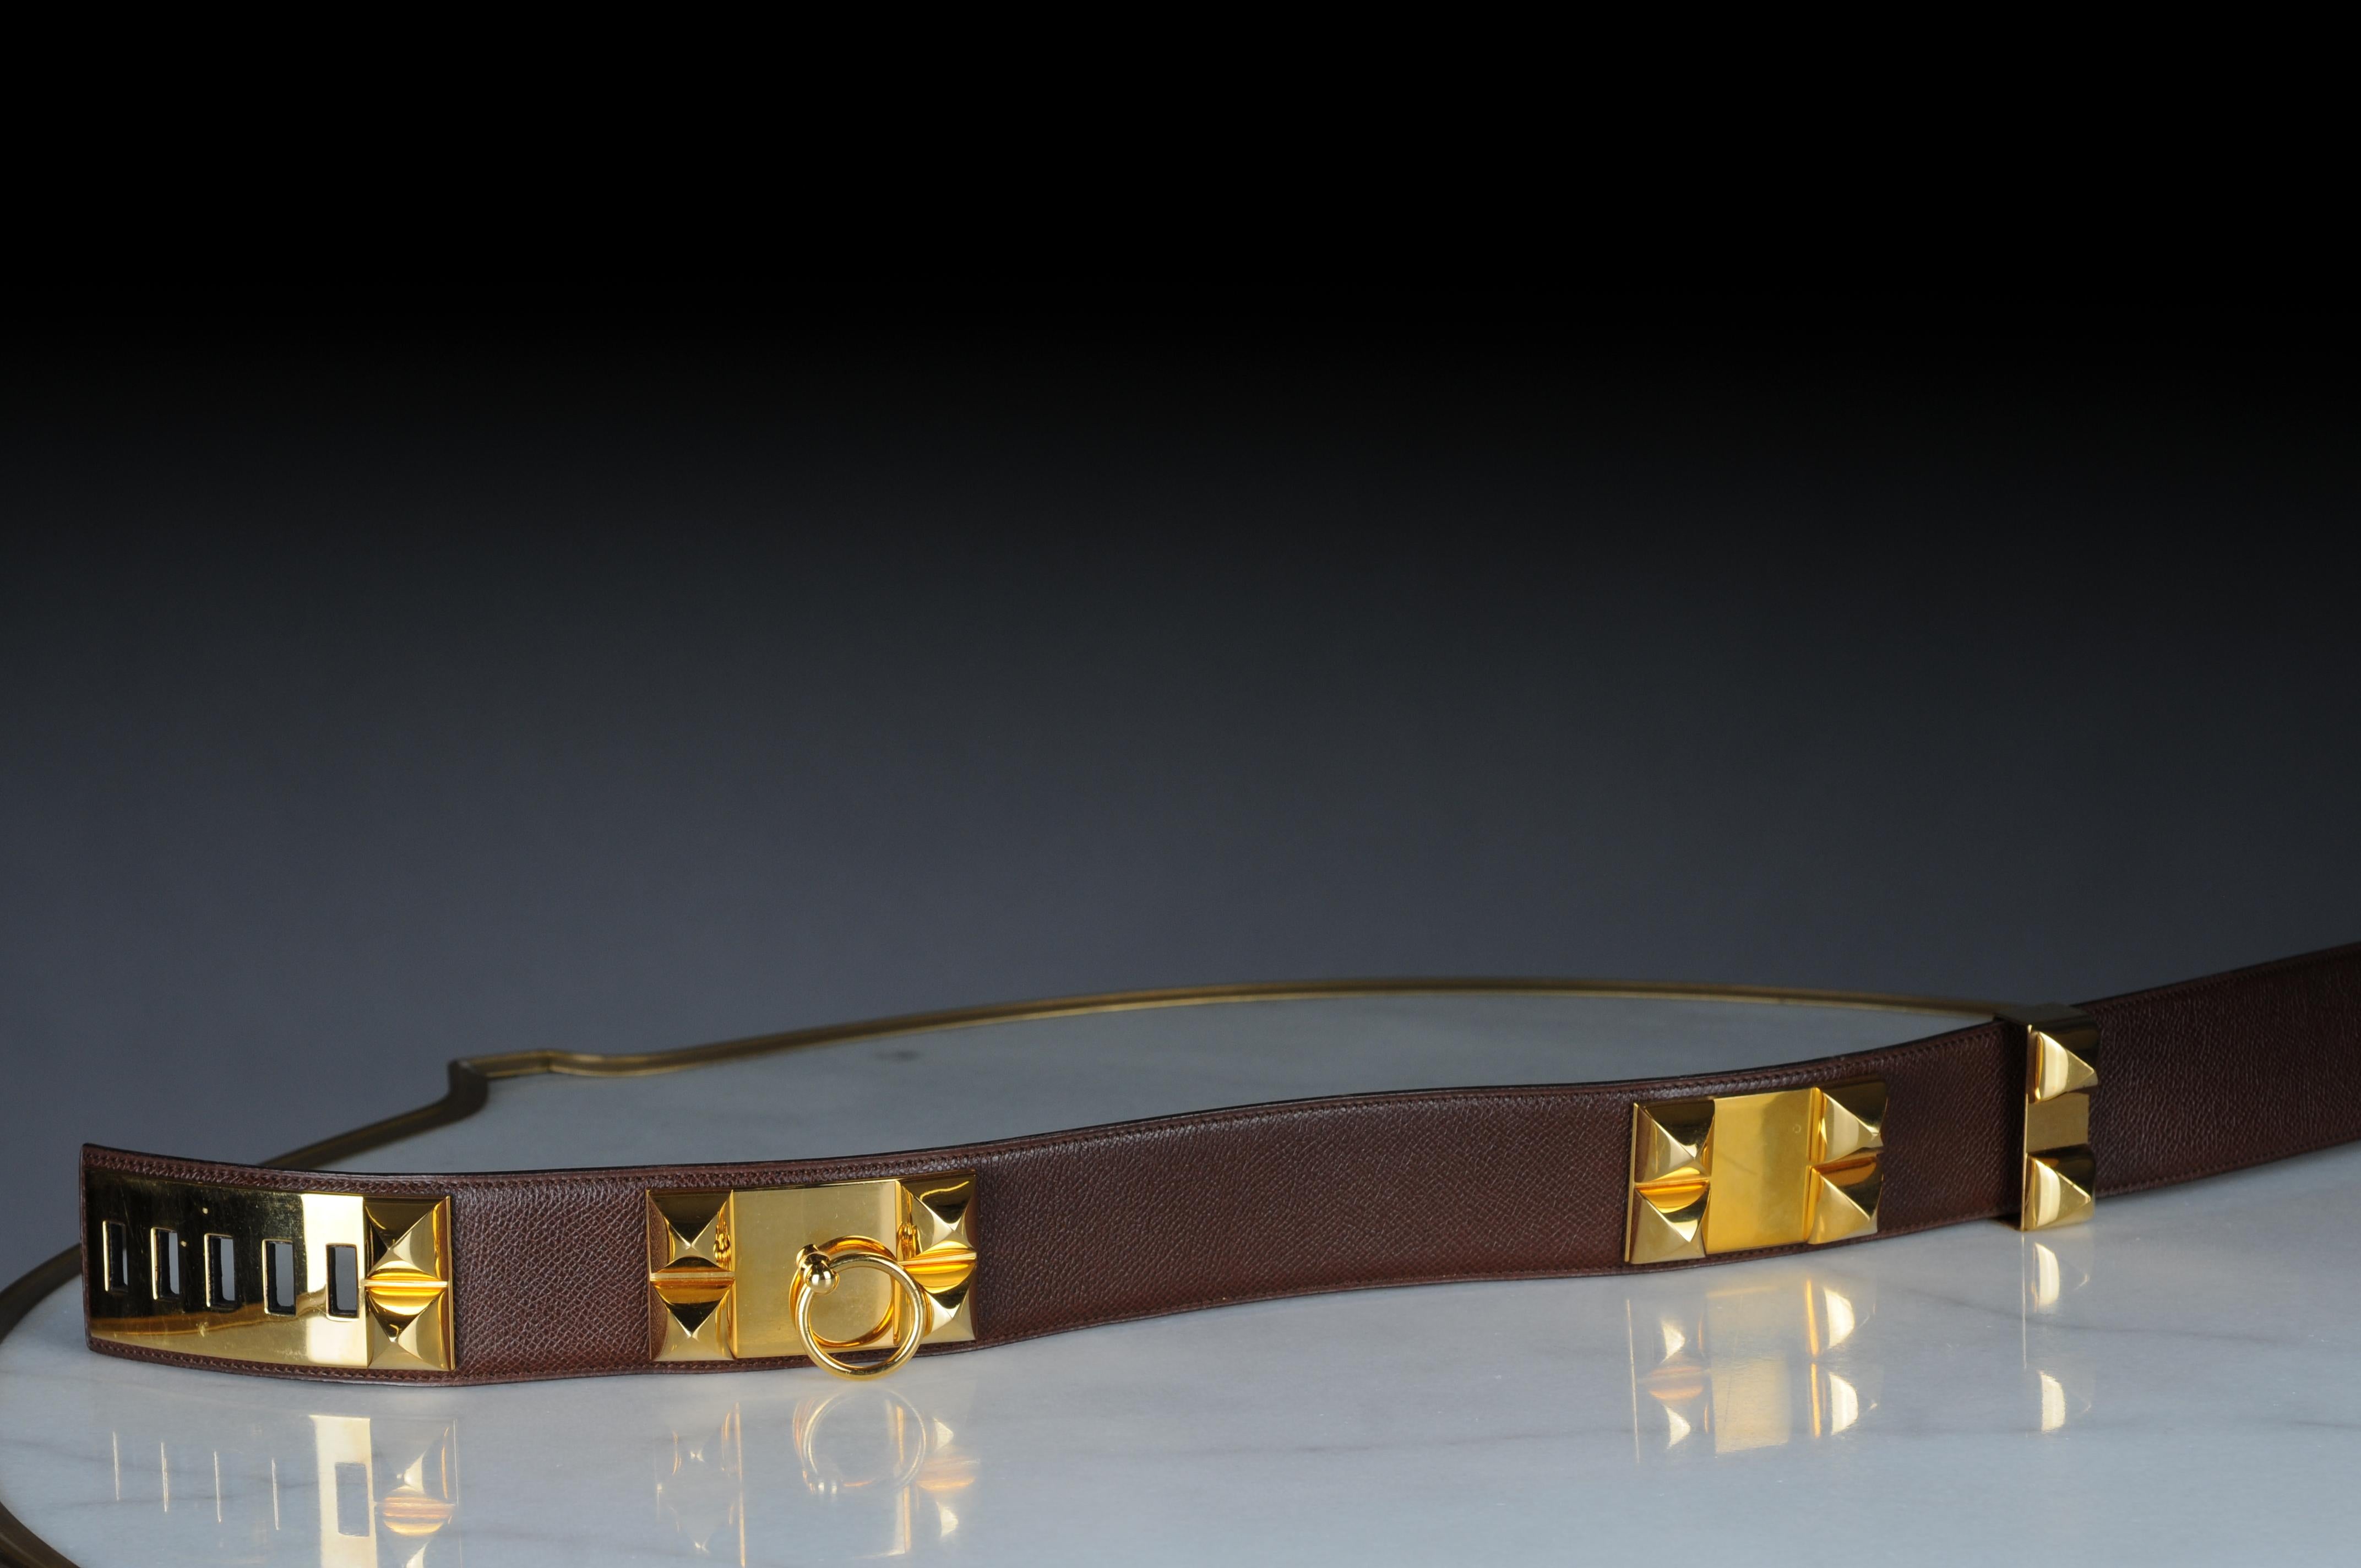 Hermes Collier de chien leather belt 70 dark brown  In Fair Condition For Sale In 10707, DE